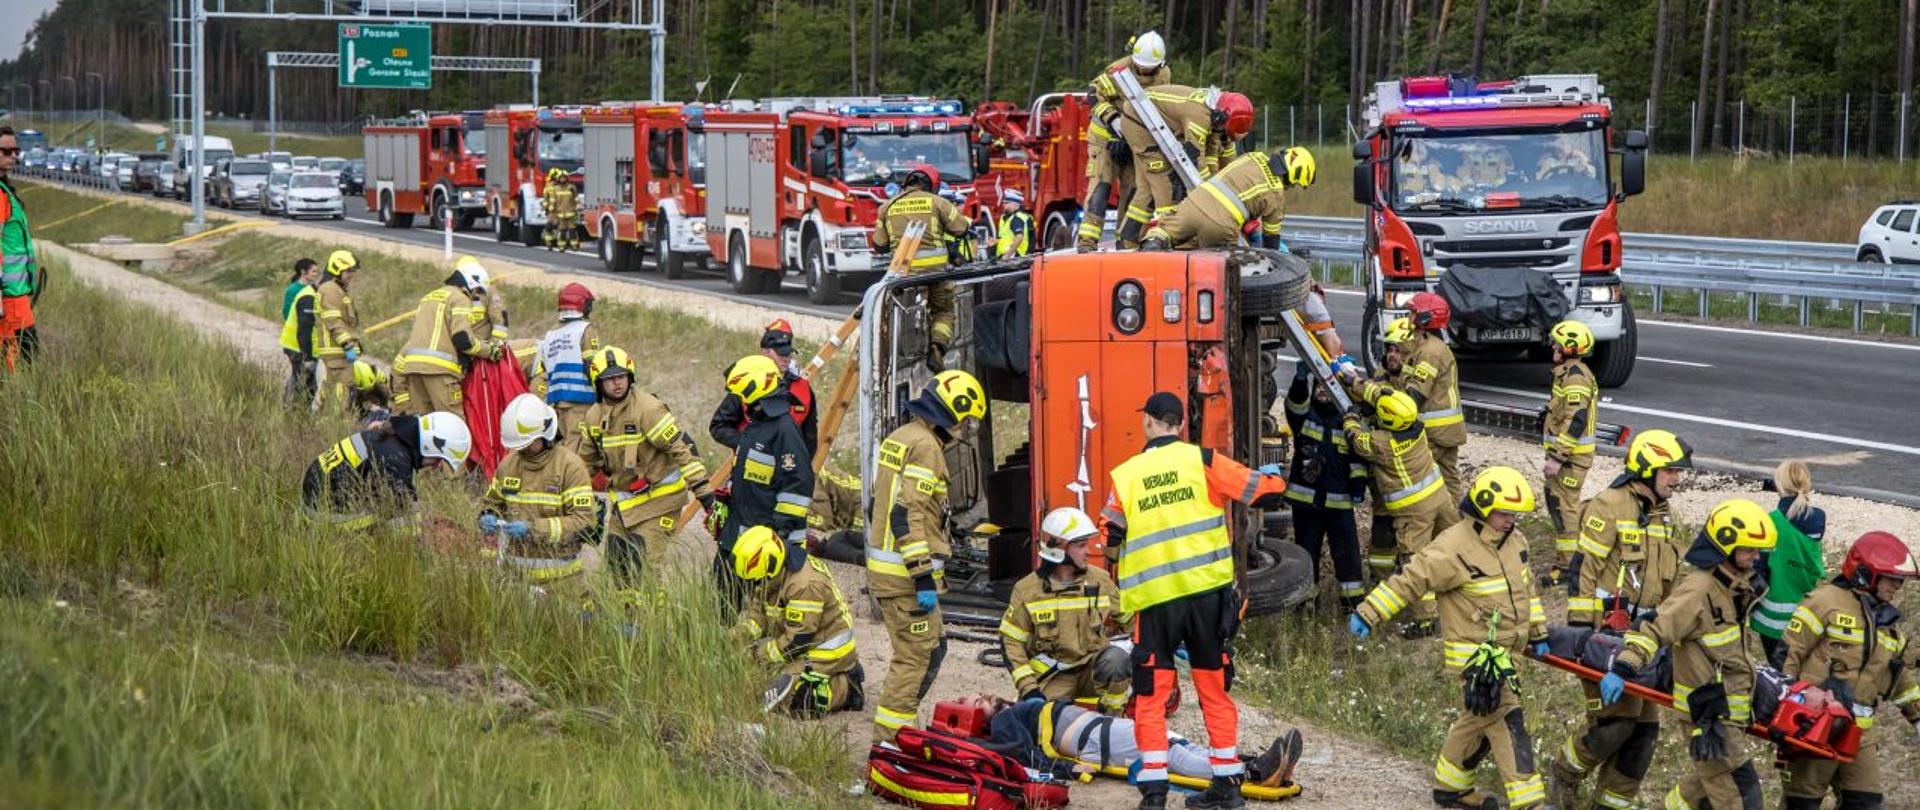 Strażacy PSP i OSP oraz ratownicy medyczni PRM prowadzą działania, ewakuują oraz udzielają kwalifikowanej pierwszej pomocy podczas ćwiczeń związanych z wypadkiem masowym. Ćwiczenia na budowanej drodze S11 koło Olesna. W tle widoczne pojazdy pożarnicze ustawione na jezdni.